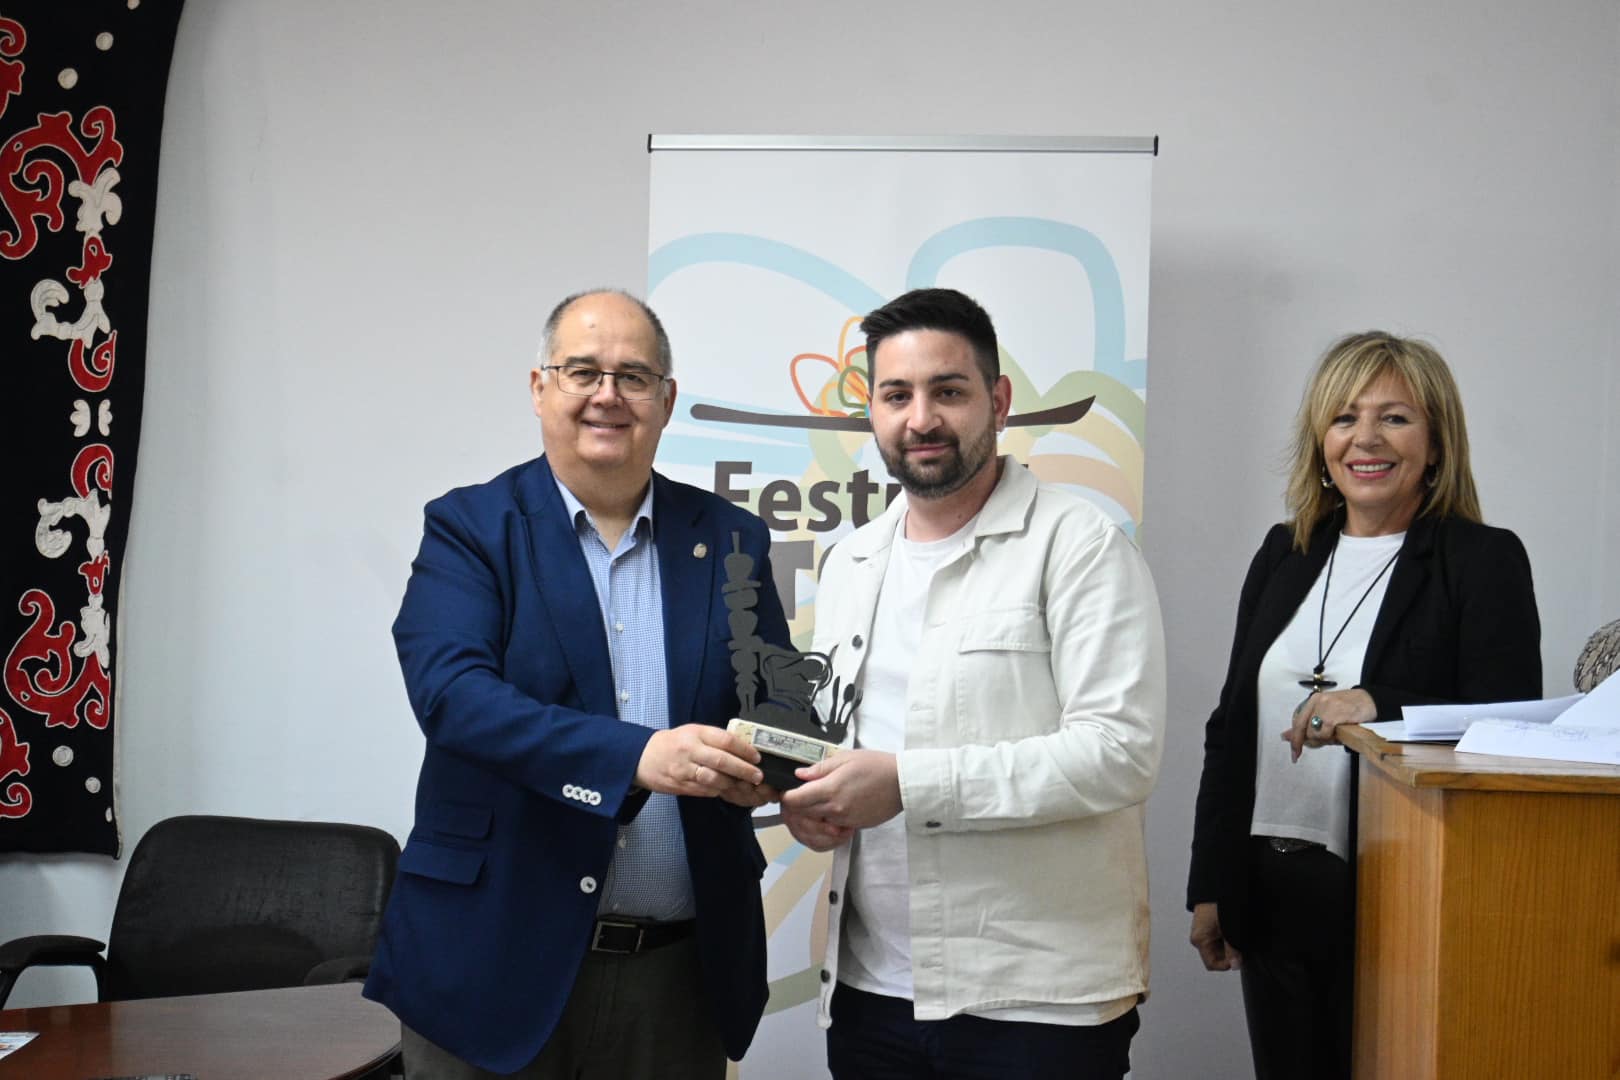 el jefe de Cocina del Parador, José Ismael Serrano Moreno, recibe el premio de manos del alcalde de la ciudad, Juan Carlos Fernández Calderón